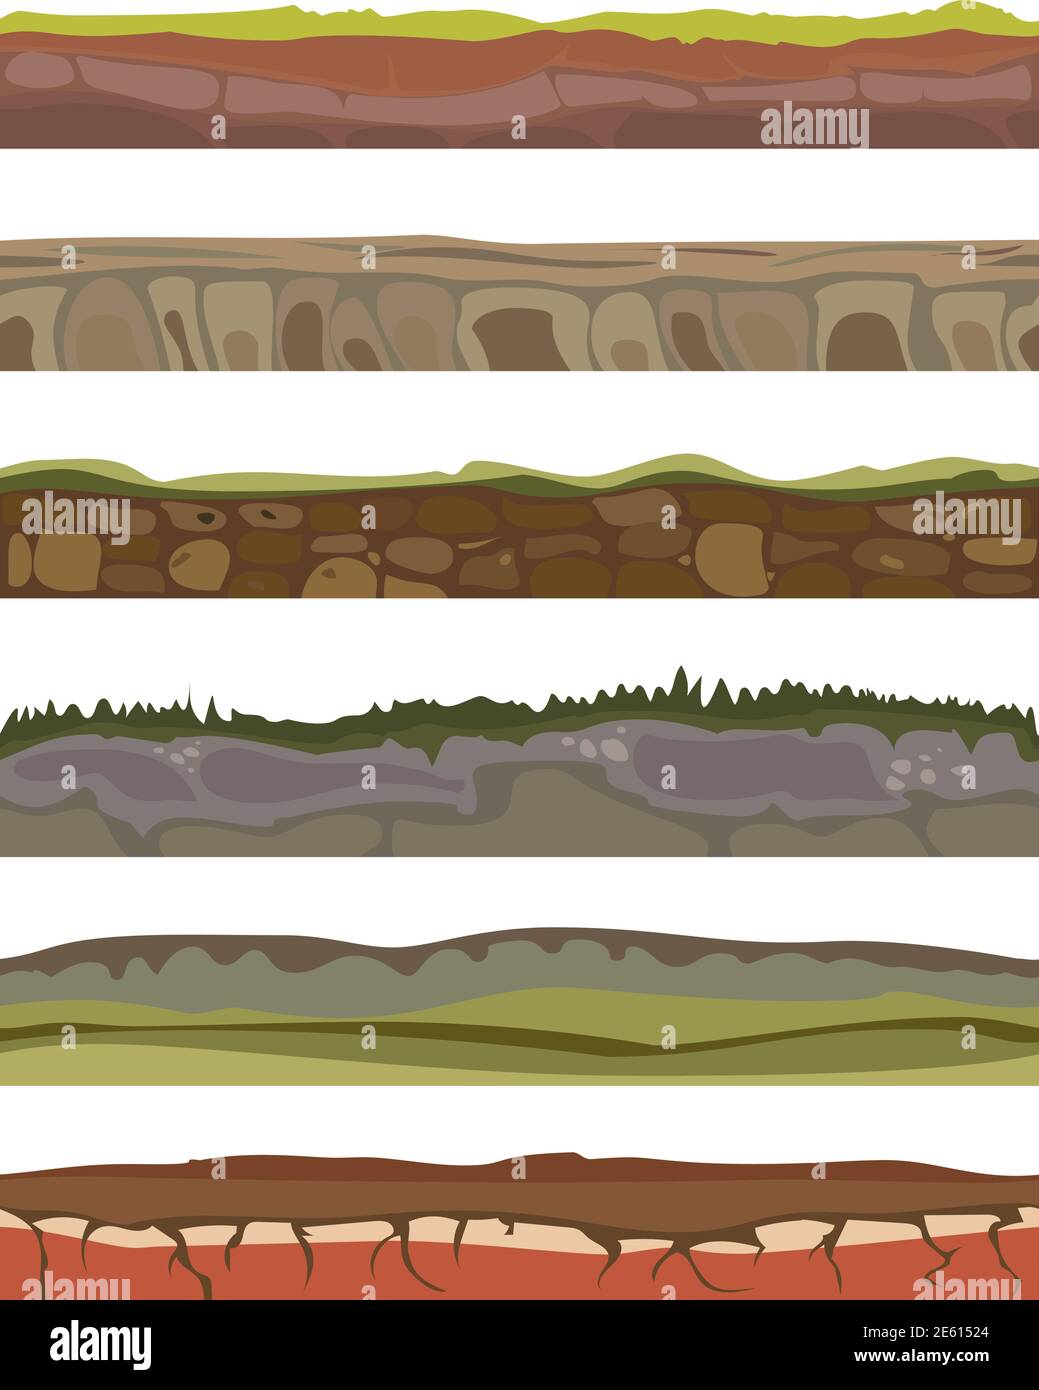 Nahtlose verschiedene geschnittenen Boden Böden für ui-Spiel. Böden Vordergrund Landfläche im Cartoon-Stil mit Grashalmen, Felsen Schichten. Vektorgrafik Stock Vektor